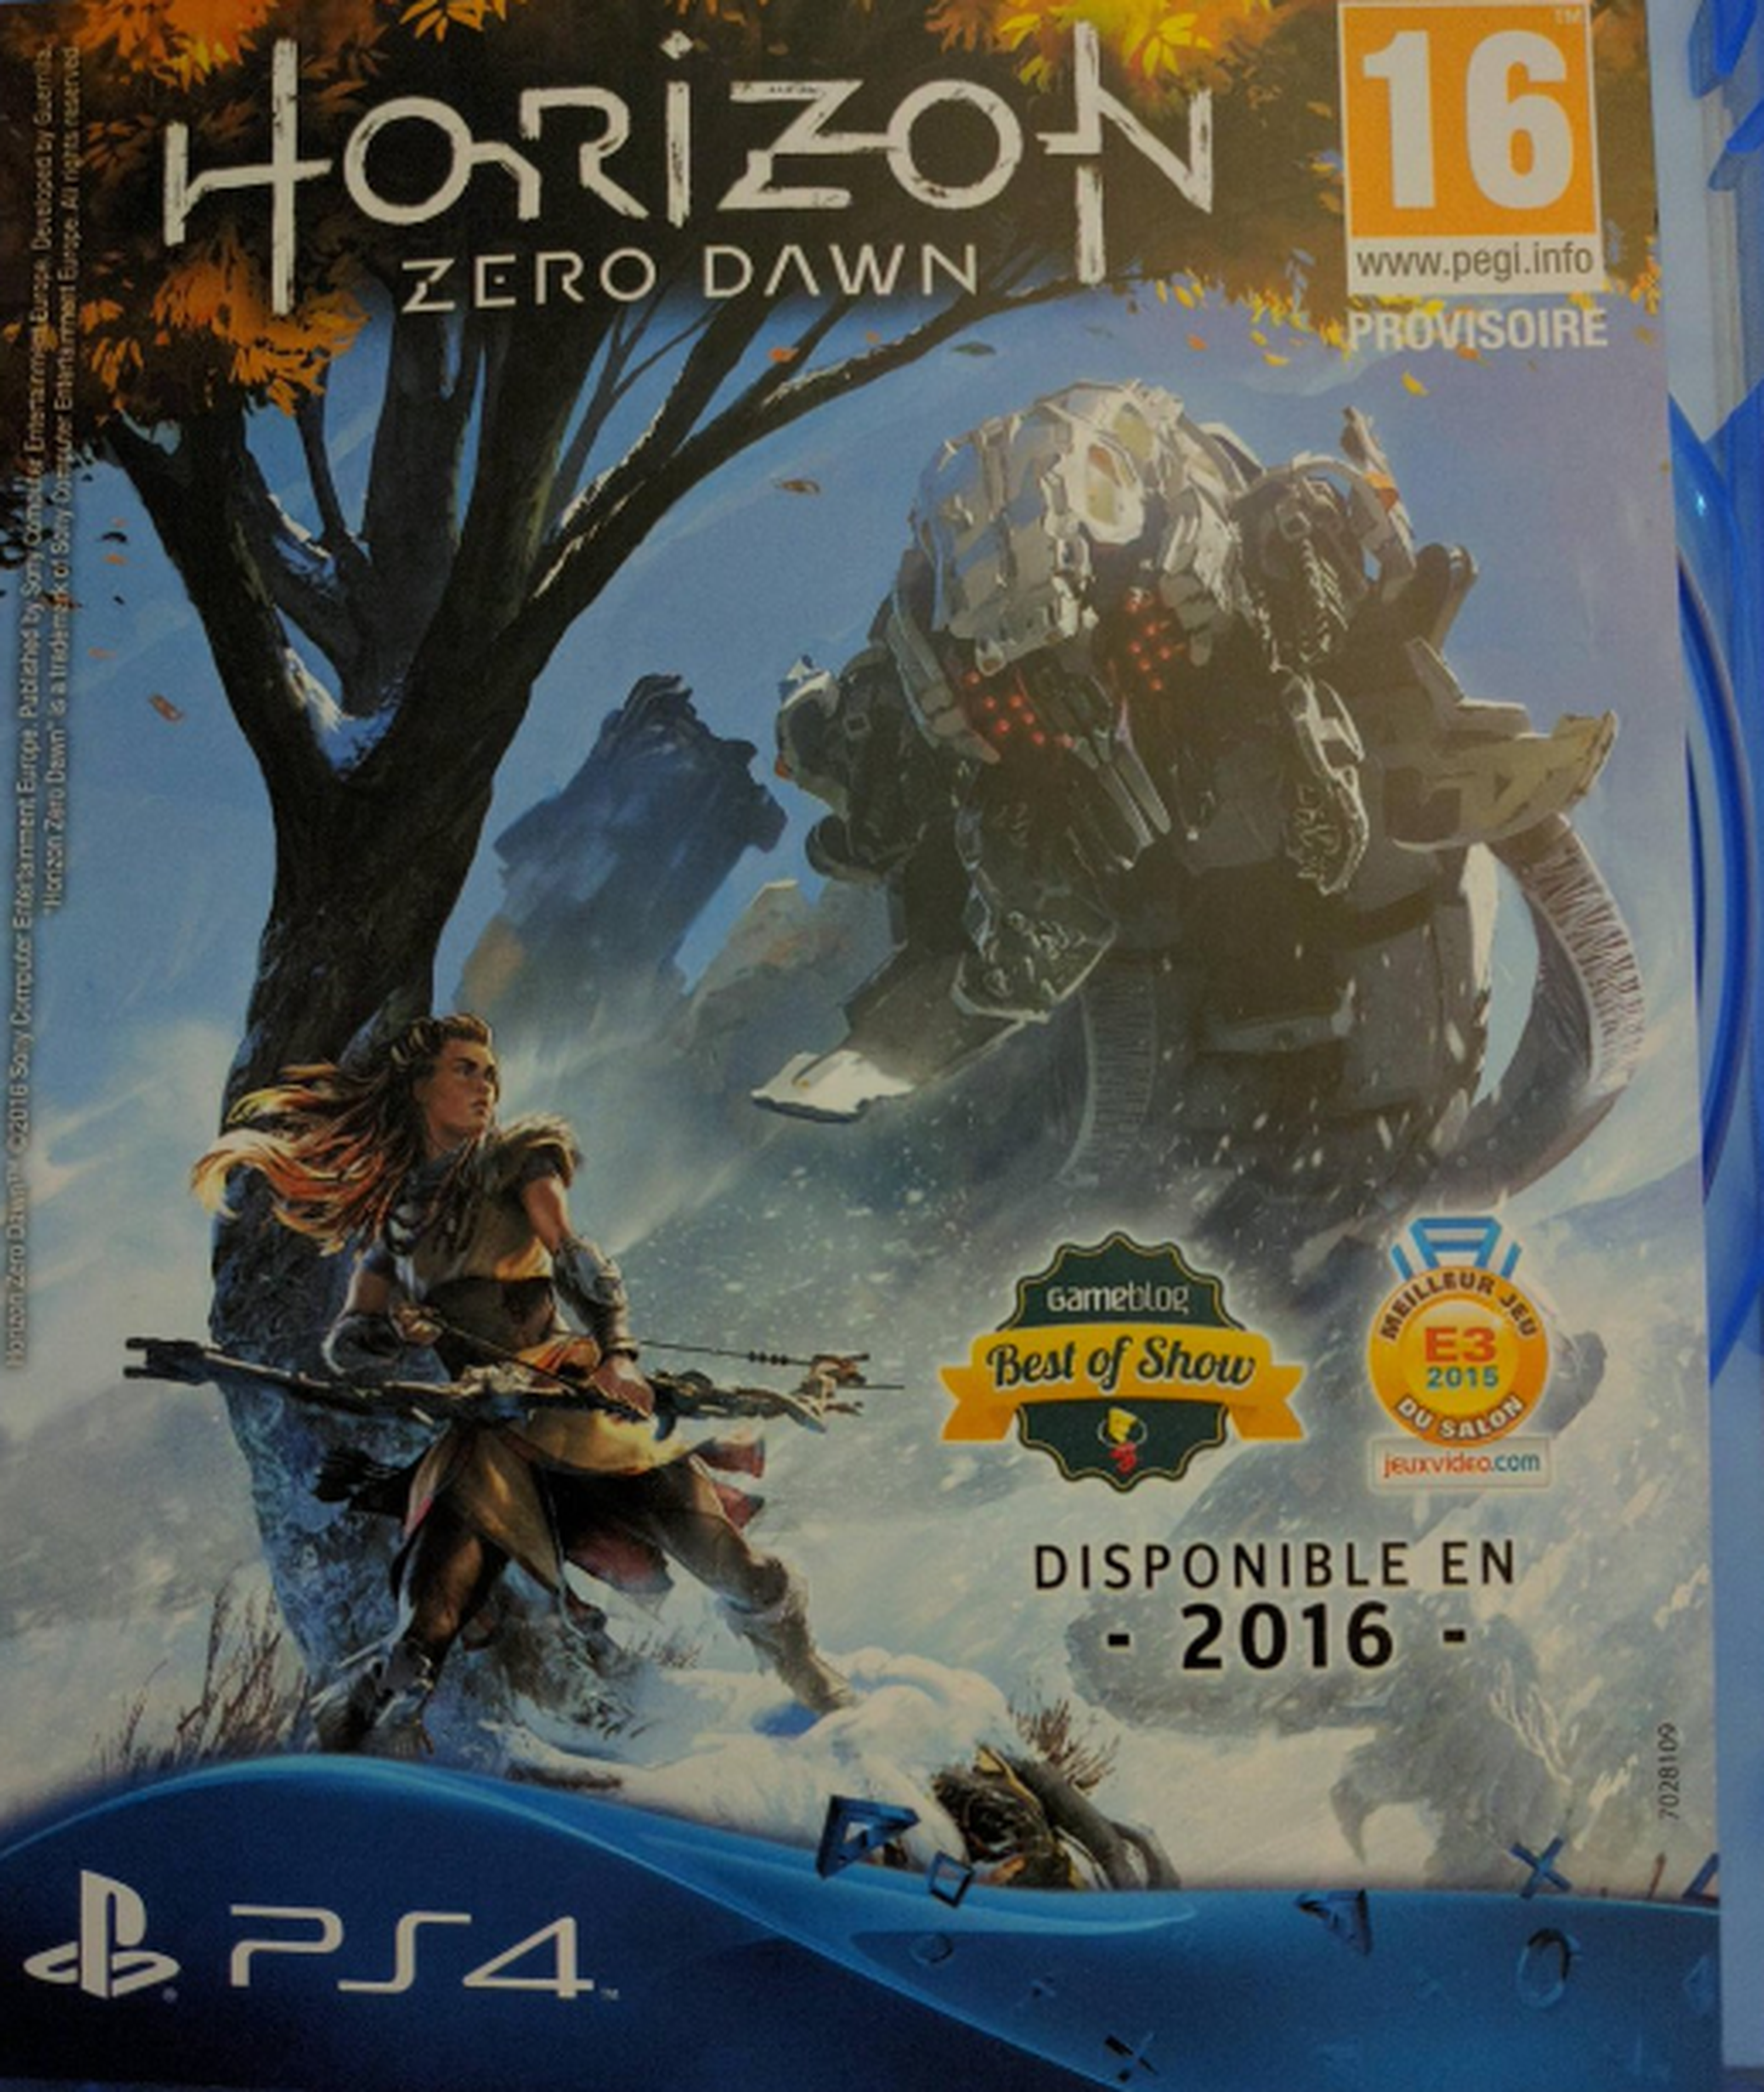 Horizon Zero Dawn para PS4 mantiene su fecha de lanzamiento en 2016